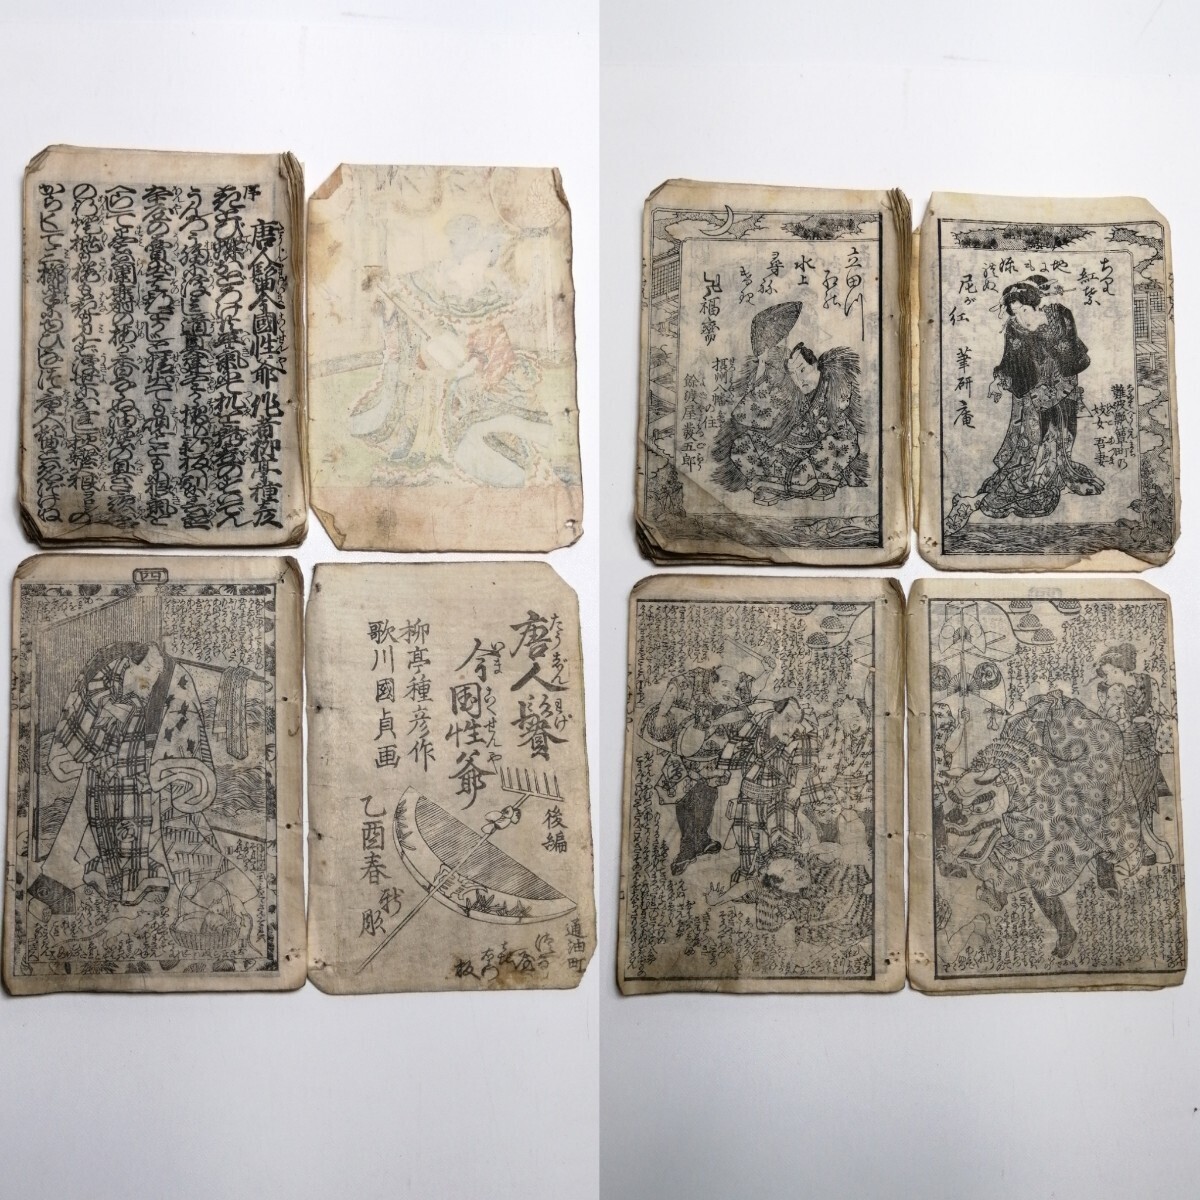  документ .8 год Tang человек . сейчас страна .... вид .. река страна ... бумага мир книга@ старинная книга старая книга гравюра на дереве картина в жанре укиё Edo времена царапина есть 